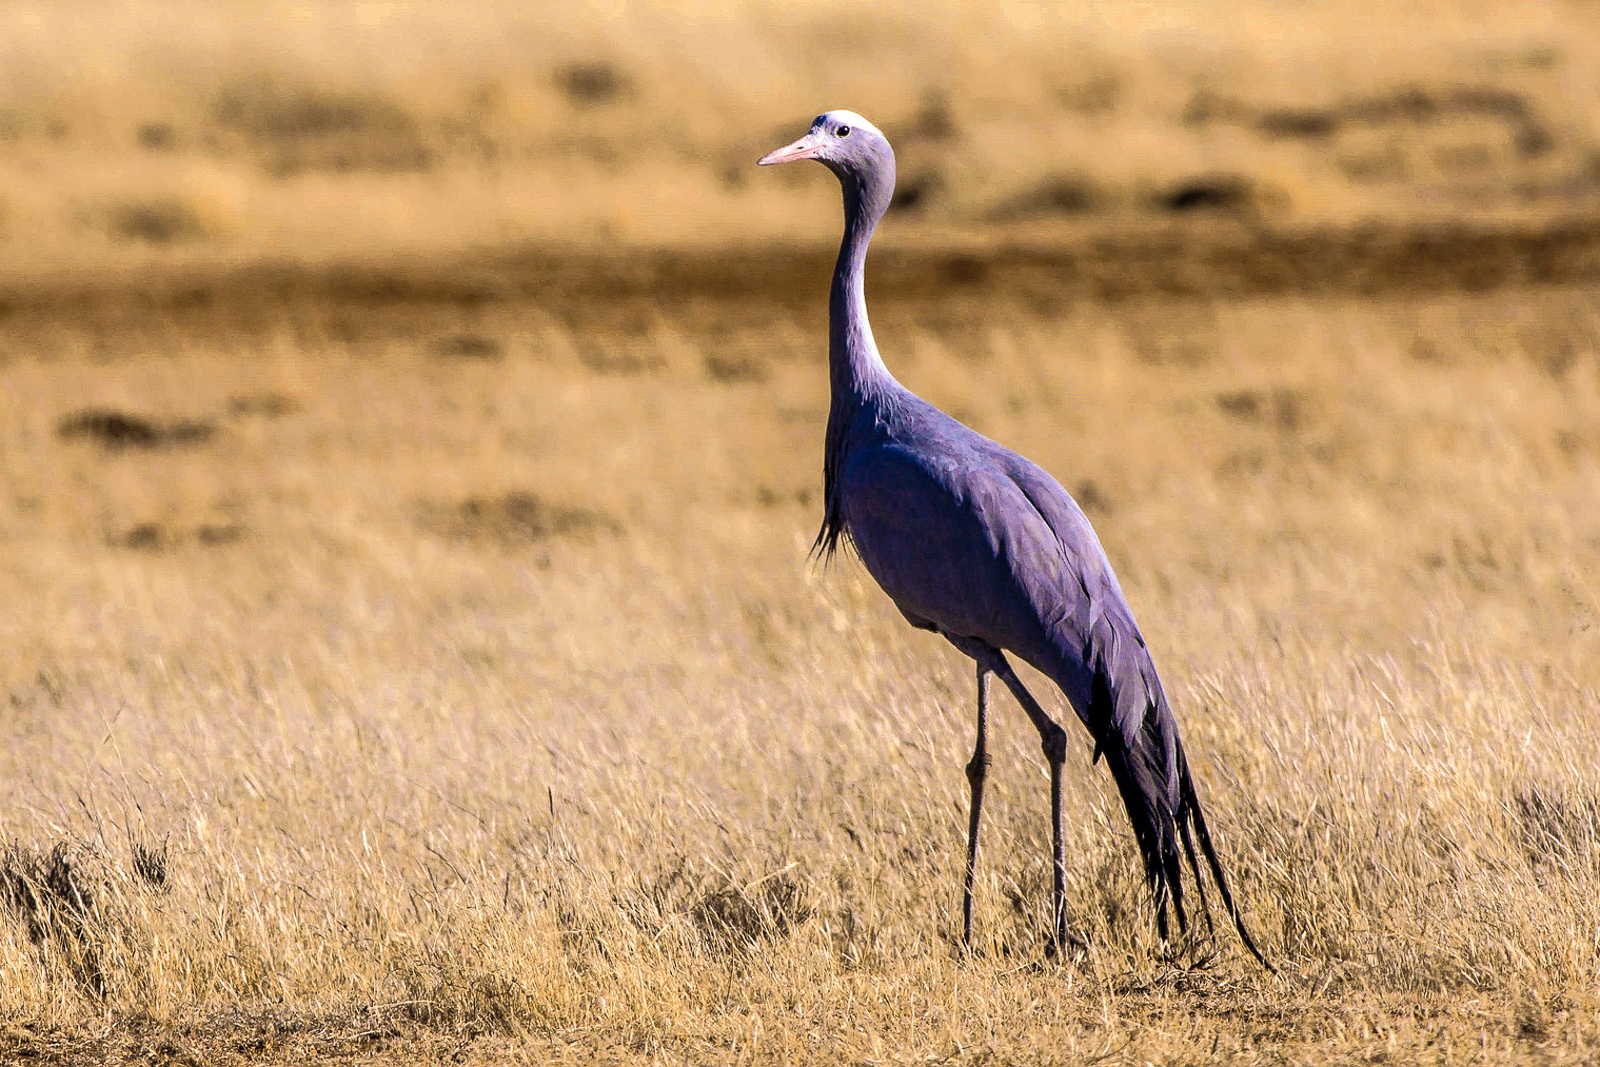 A blue crane in the Samara Game Reserve in South Africa